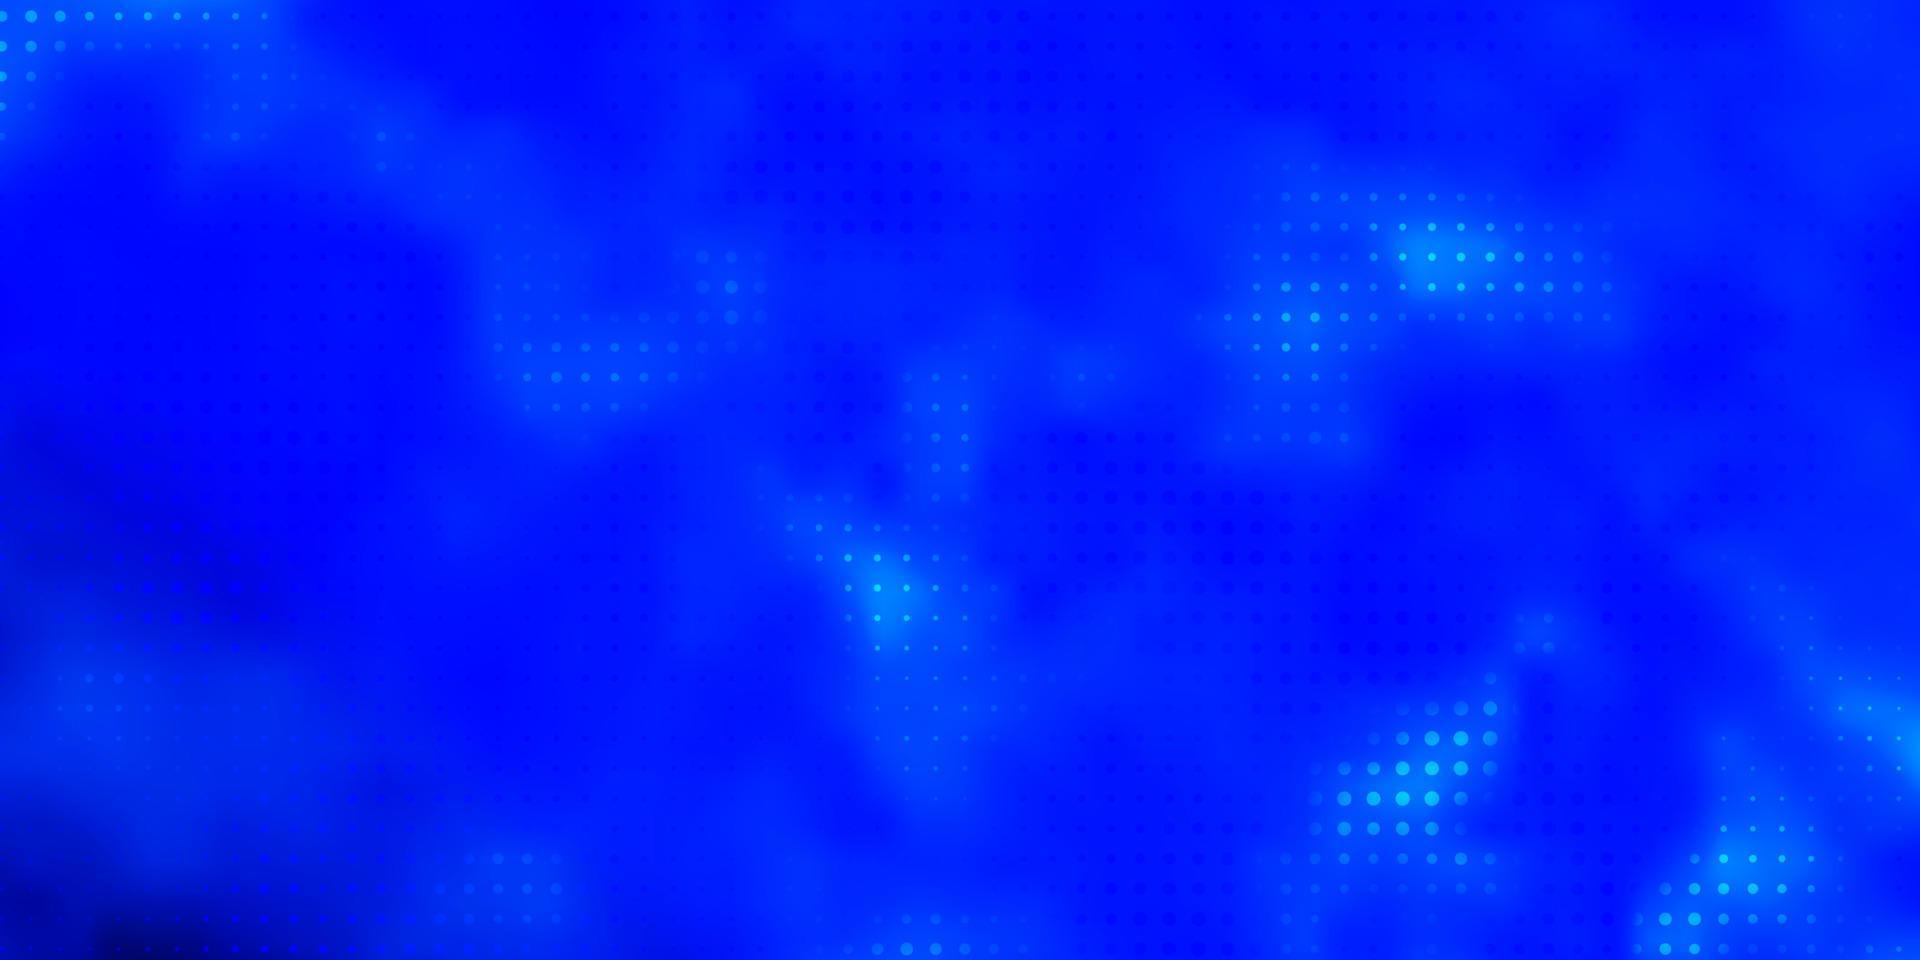 padrão de vetor azul claro com círculos.